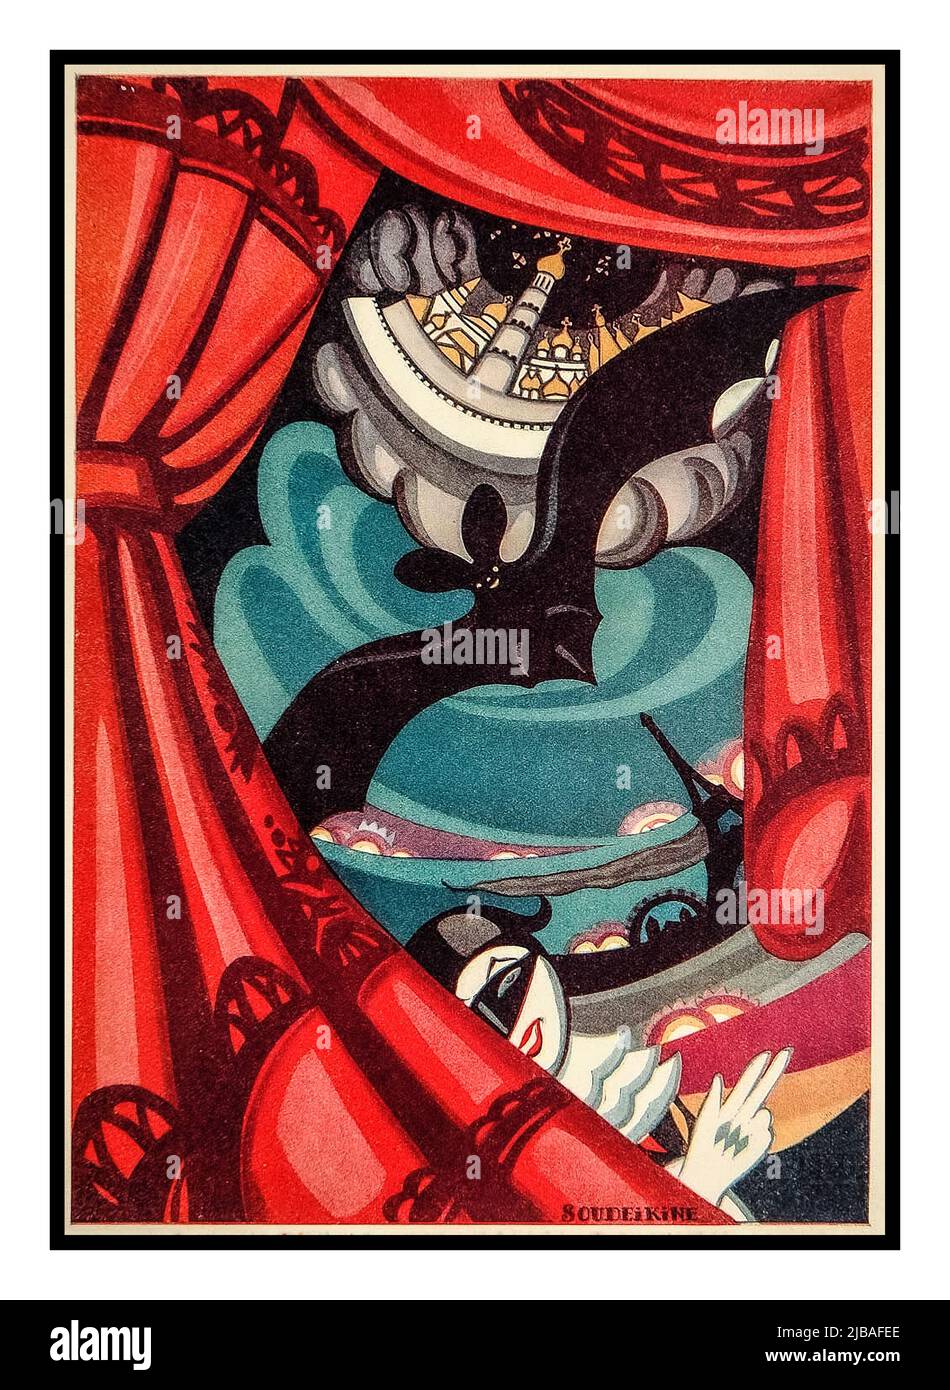 Poster di intrattenimento russo-sovietico vintage 1920s "Bat Theatre" a Mosca. Poster disegnato da Sergei Soudeikine. Mosca Unione sovietica URSS Data 1922 Foto Stock